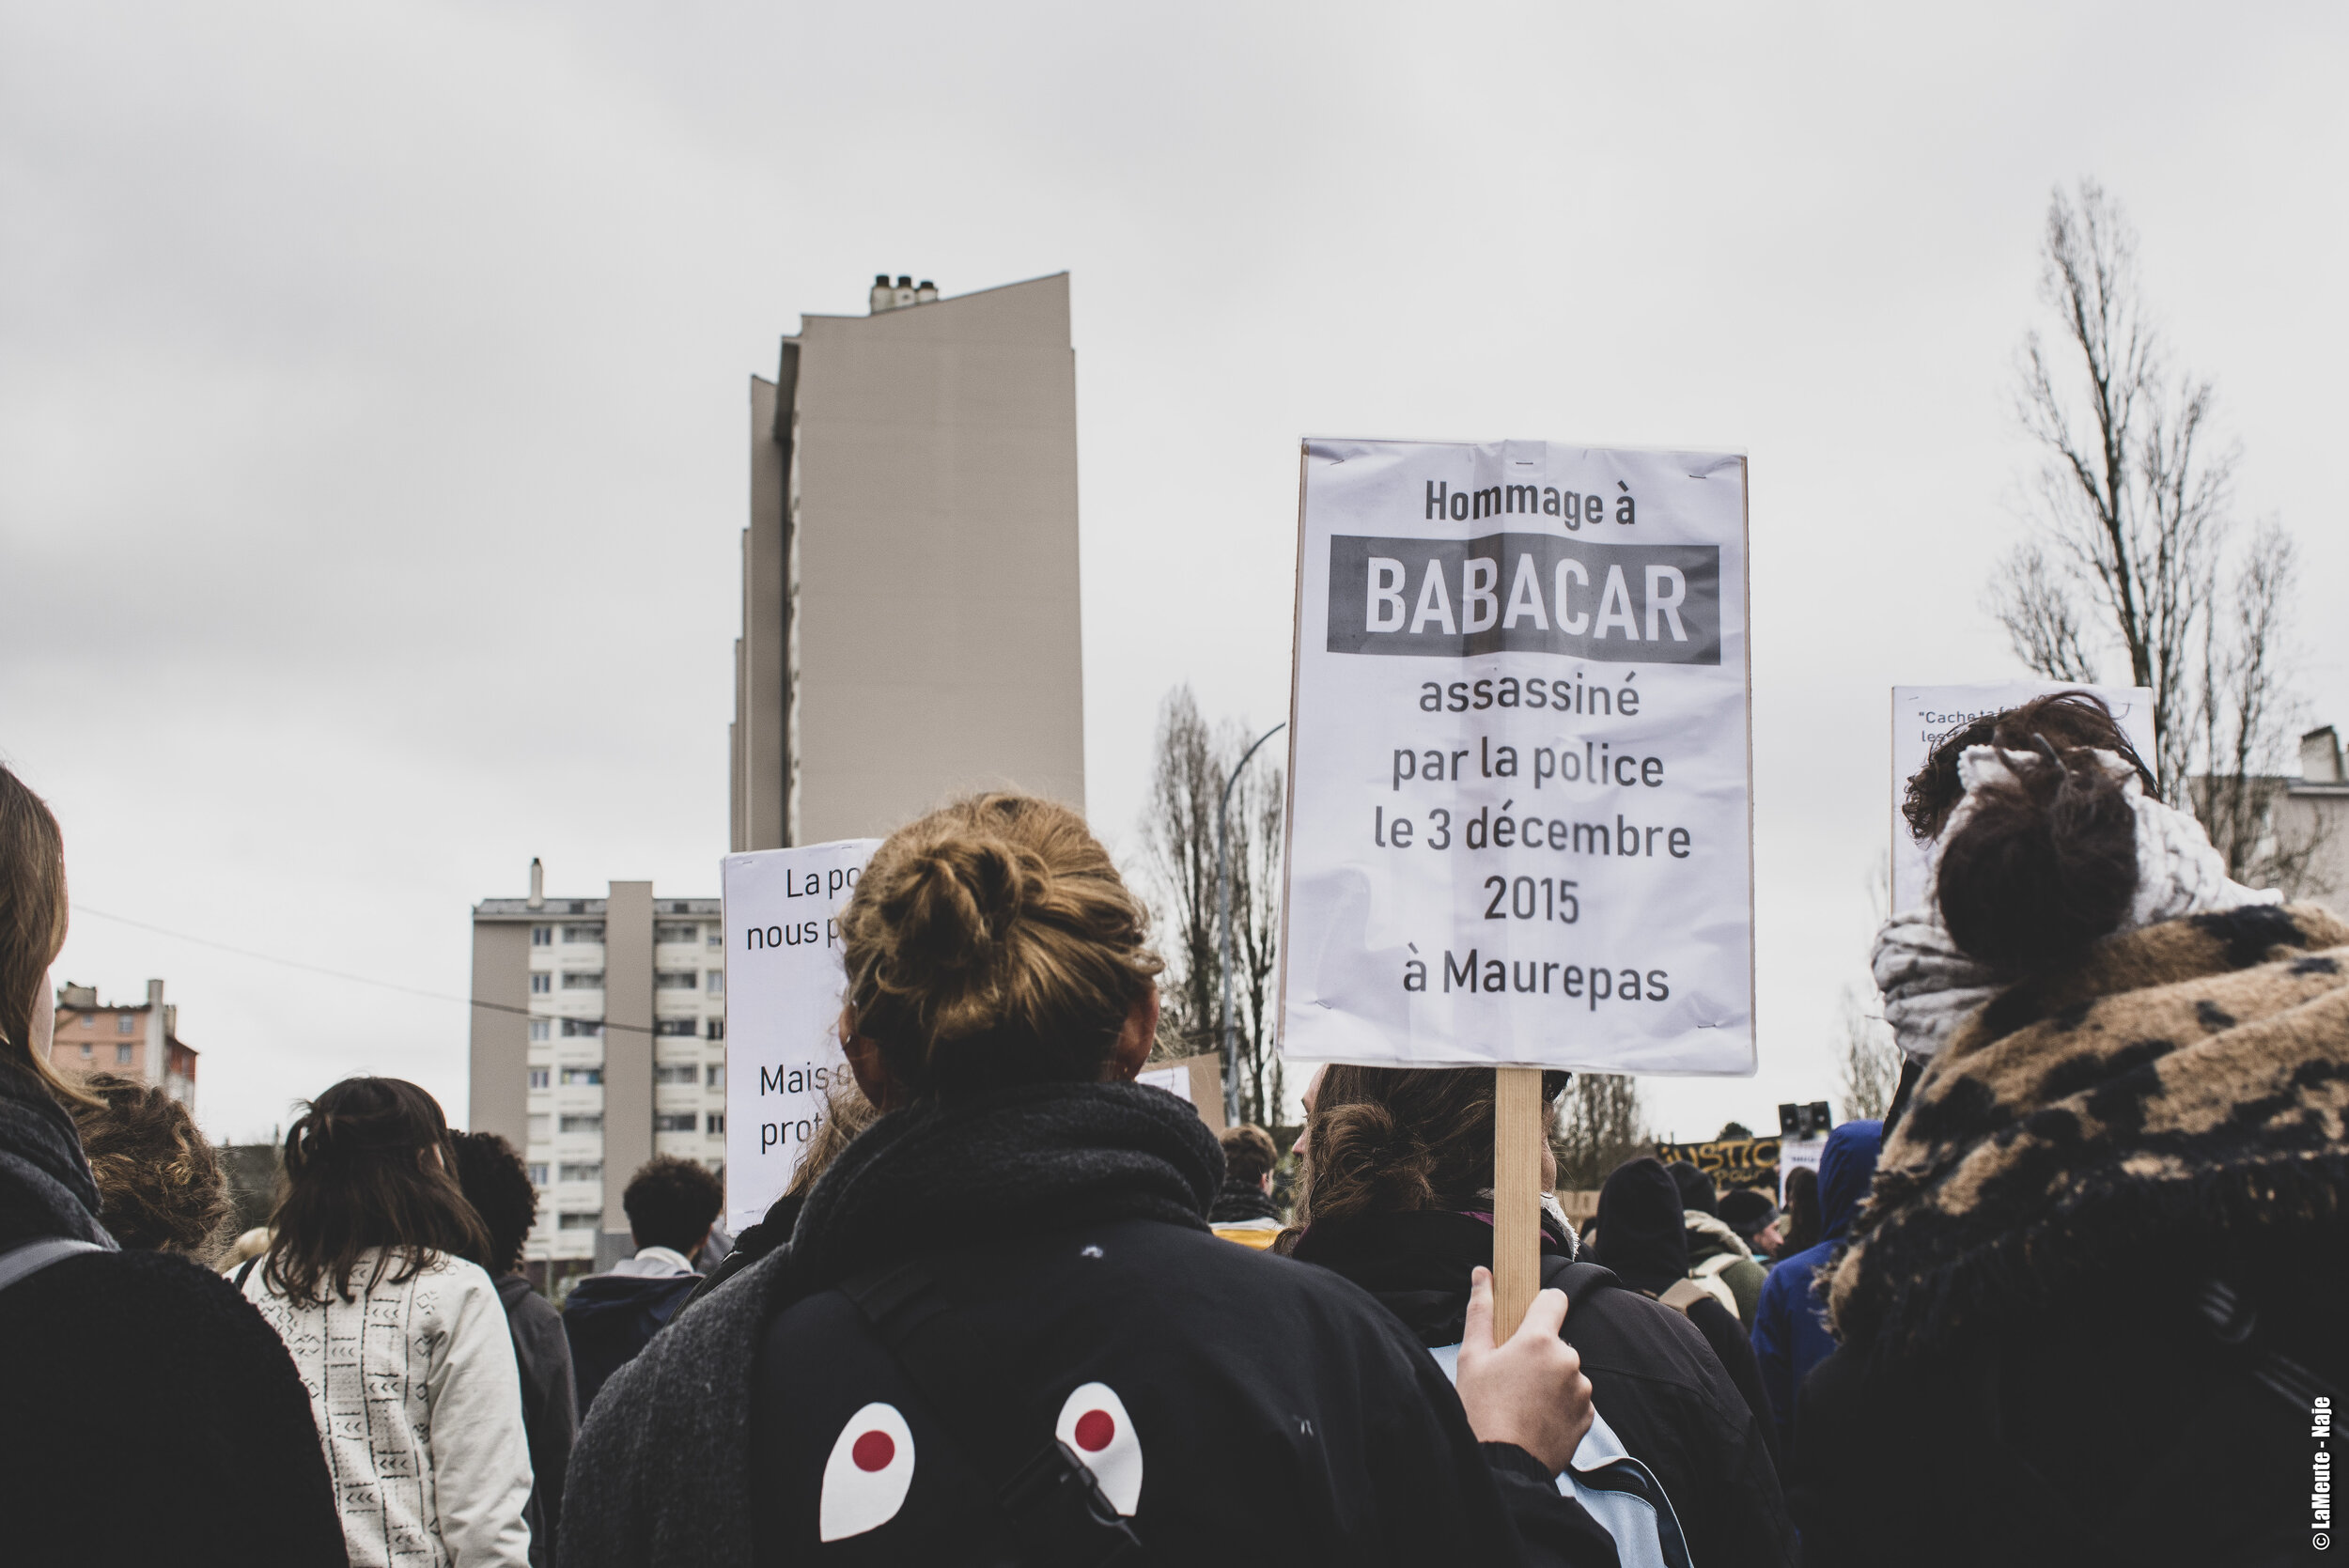   De nombreux•ses manifestant•es venu•es soutenir le collectif justice et vérité pour Babacar Gueye portent des pancartes. Celle-ci au premier plan rappelle les circonstances de la mort de Babacar.  ©LaMeute - Naje   